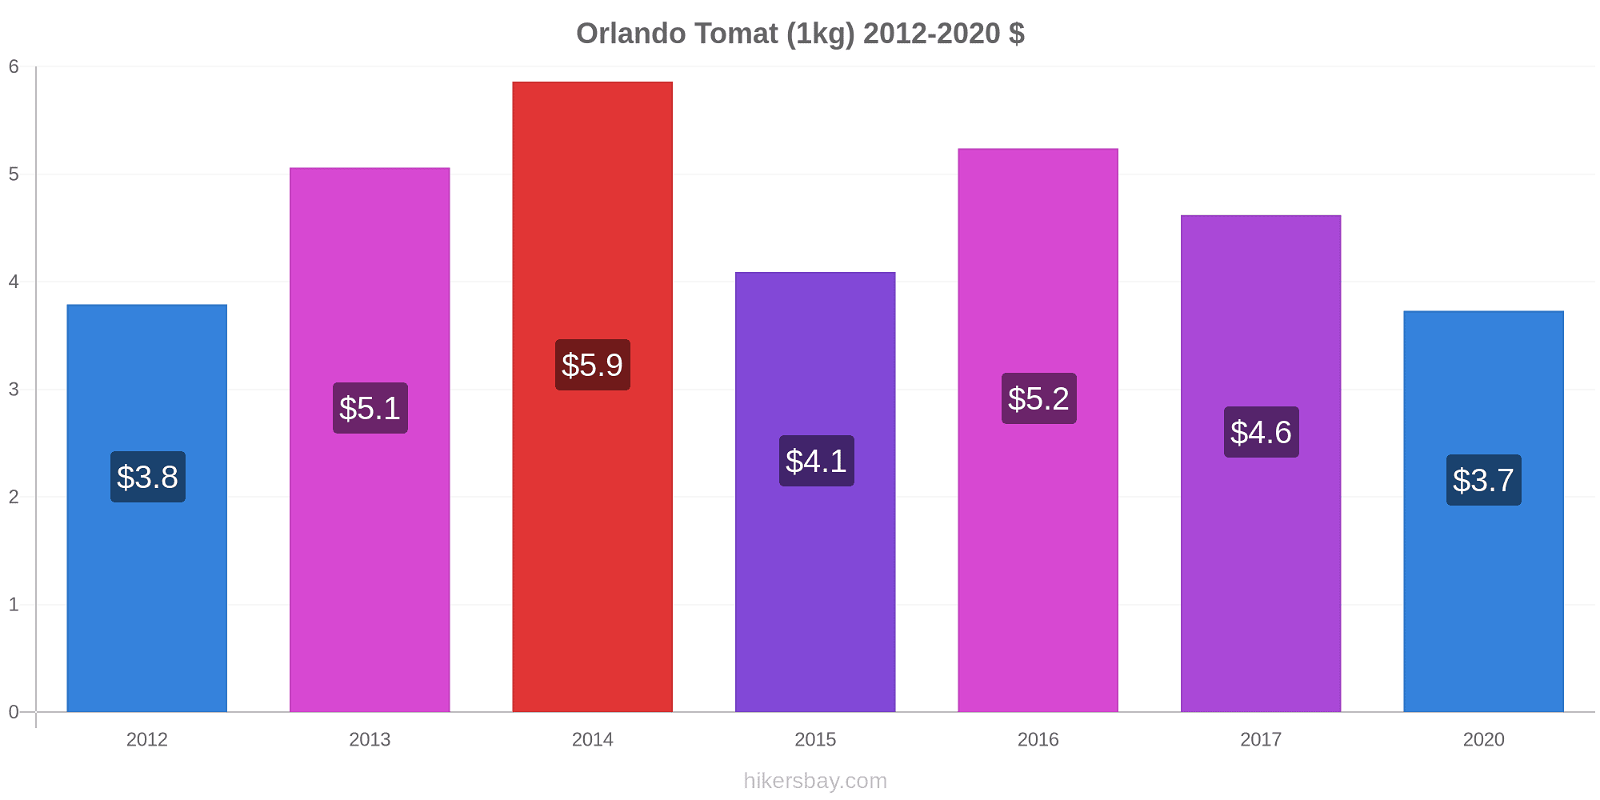 Orlando prisförändringar Tomat (1kg) hikersbay.com